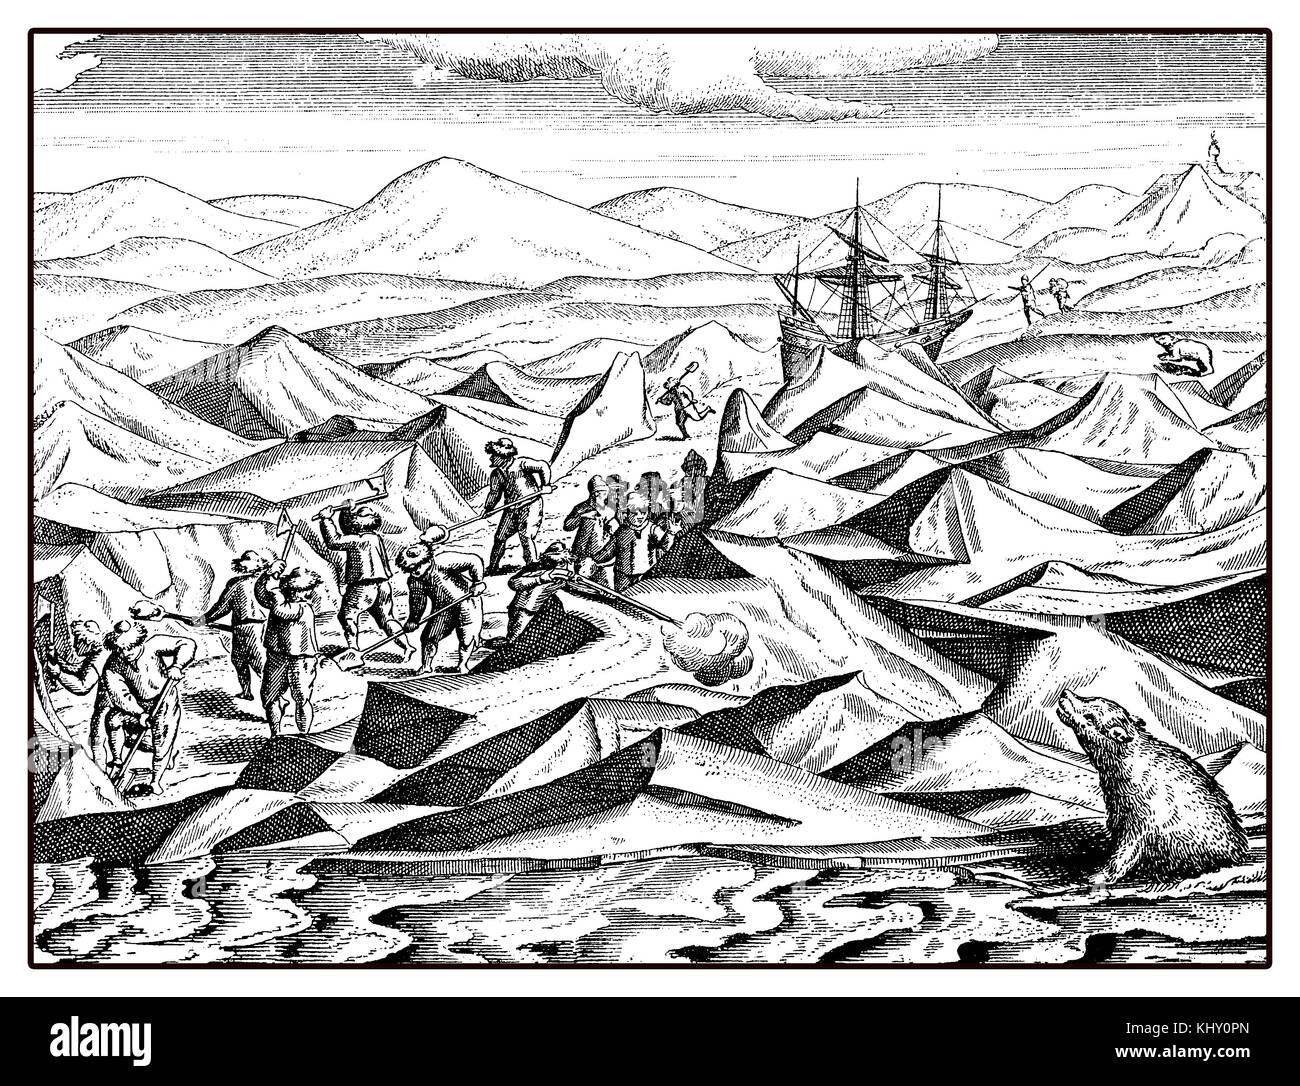 William spedizione di barents artic per trovare un passaggio nordheast nel XVI secolo Foto Stock